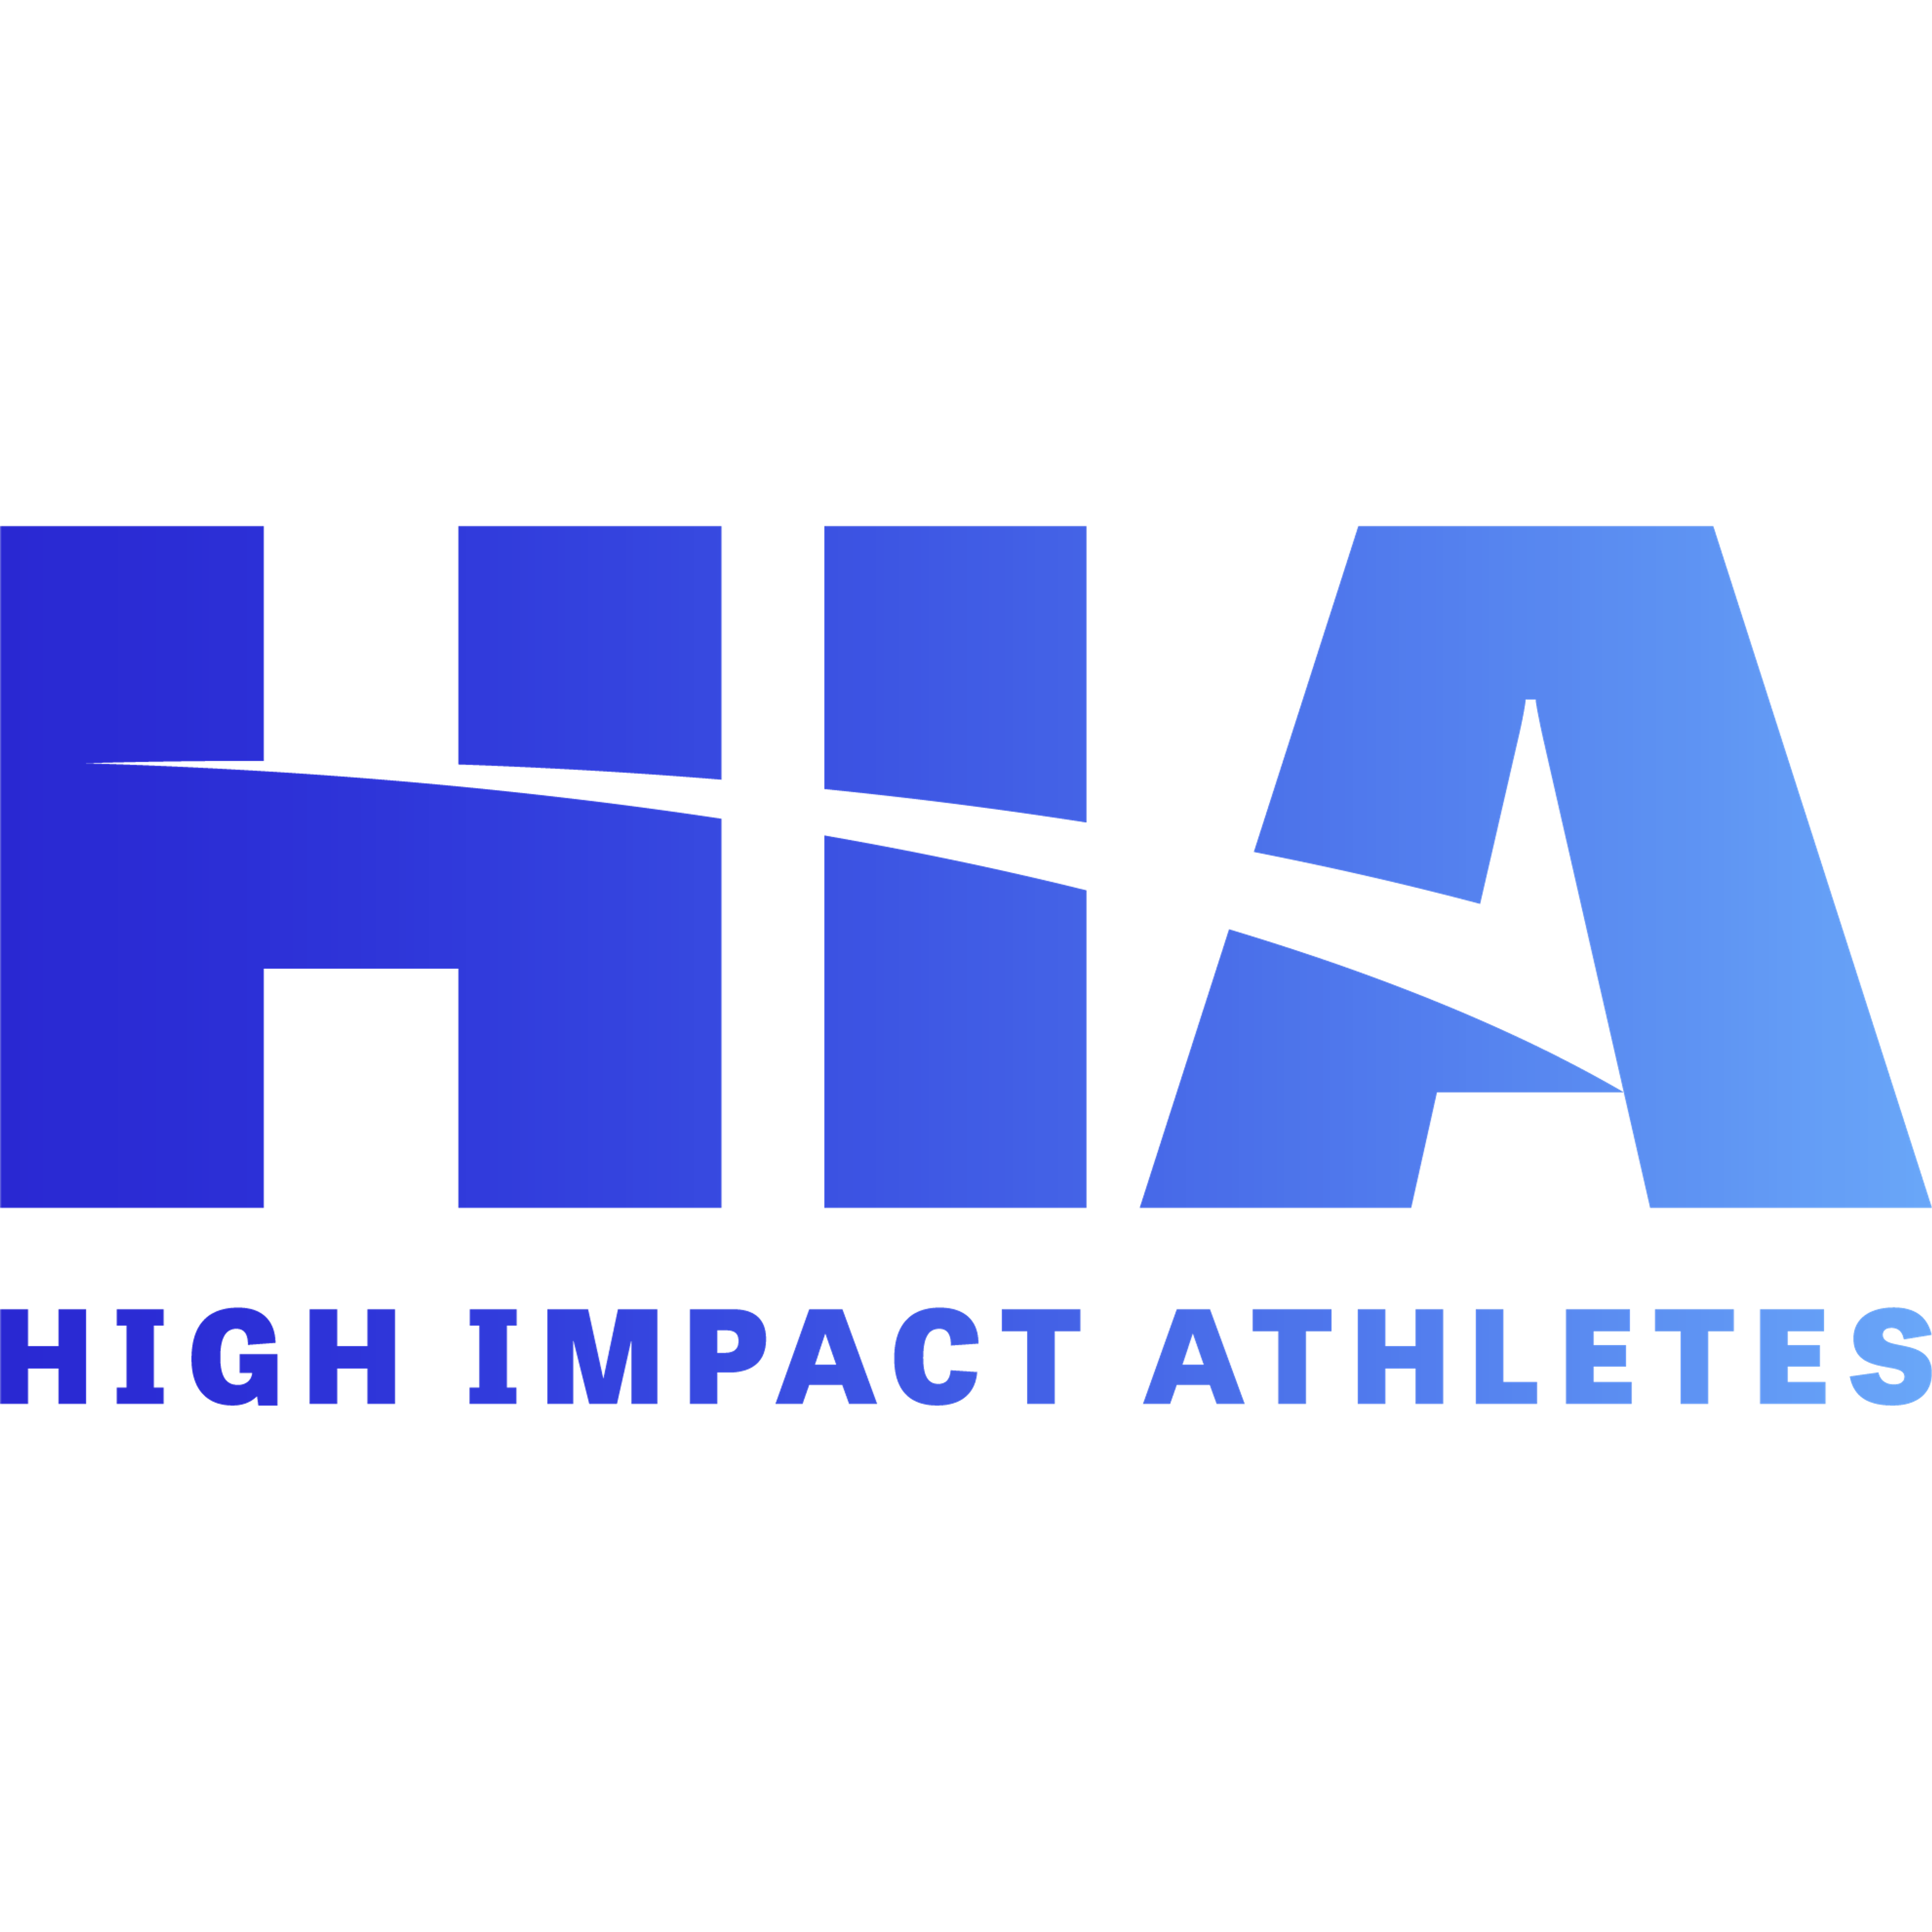 High Impact Athletes’ Maximum Good Portfolio